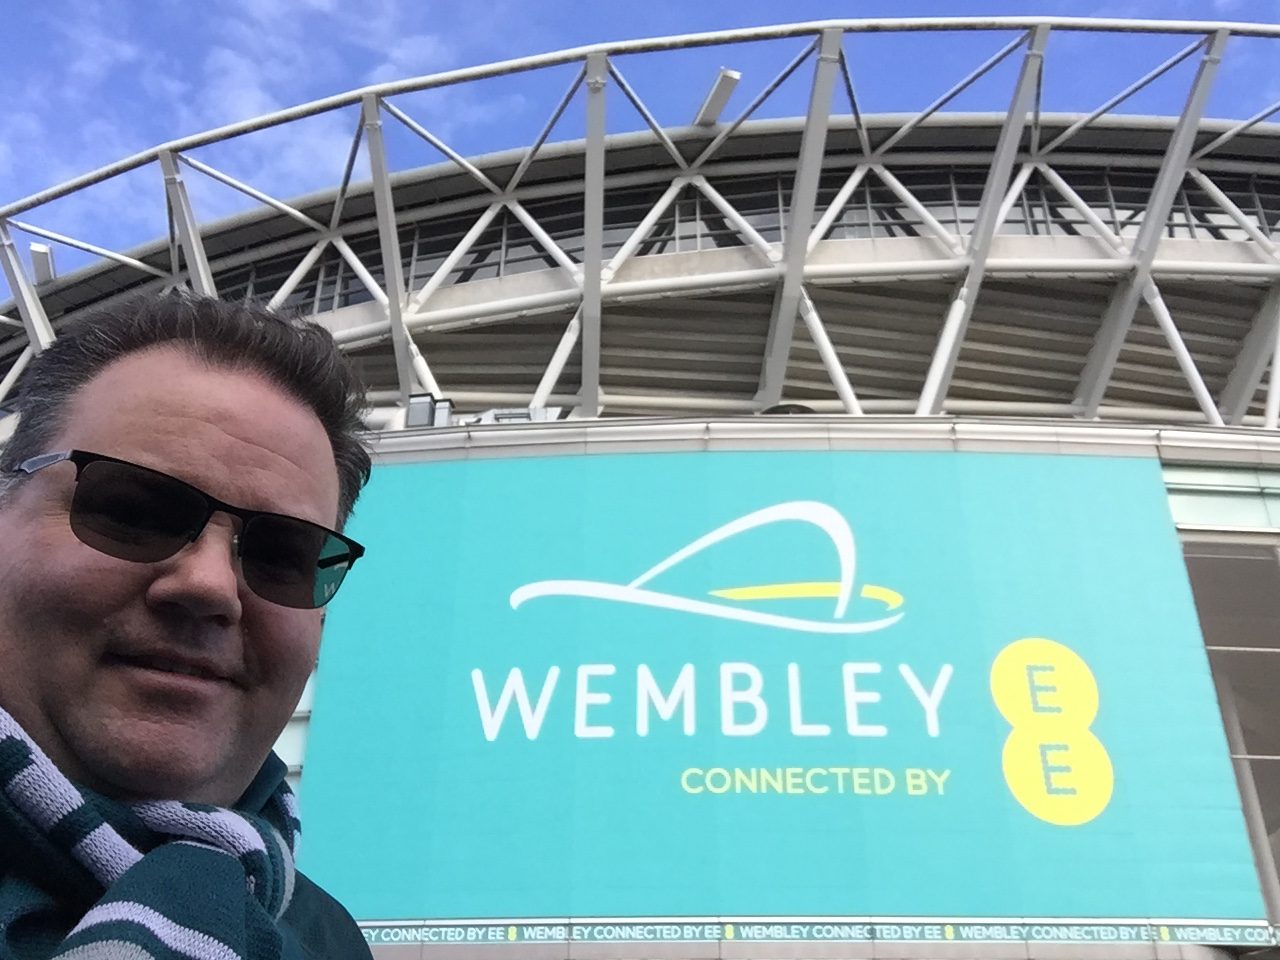 London, UK. 28 October 2018. Eagles fans. Philadelphia Eagles at  Jacksonville Jaguars NFL game at Wembley